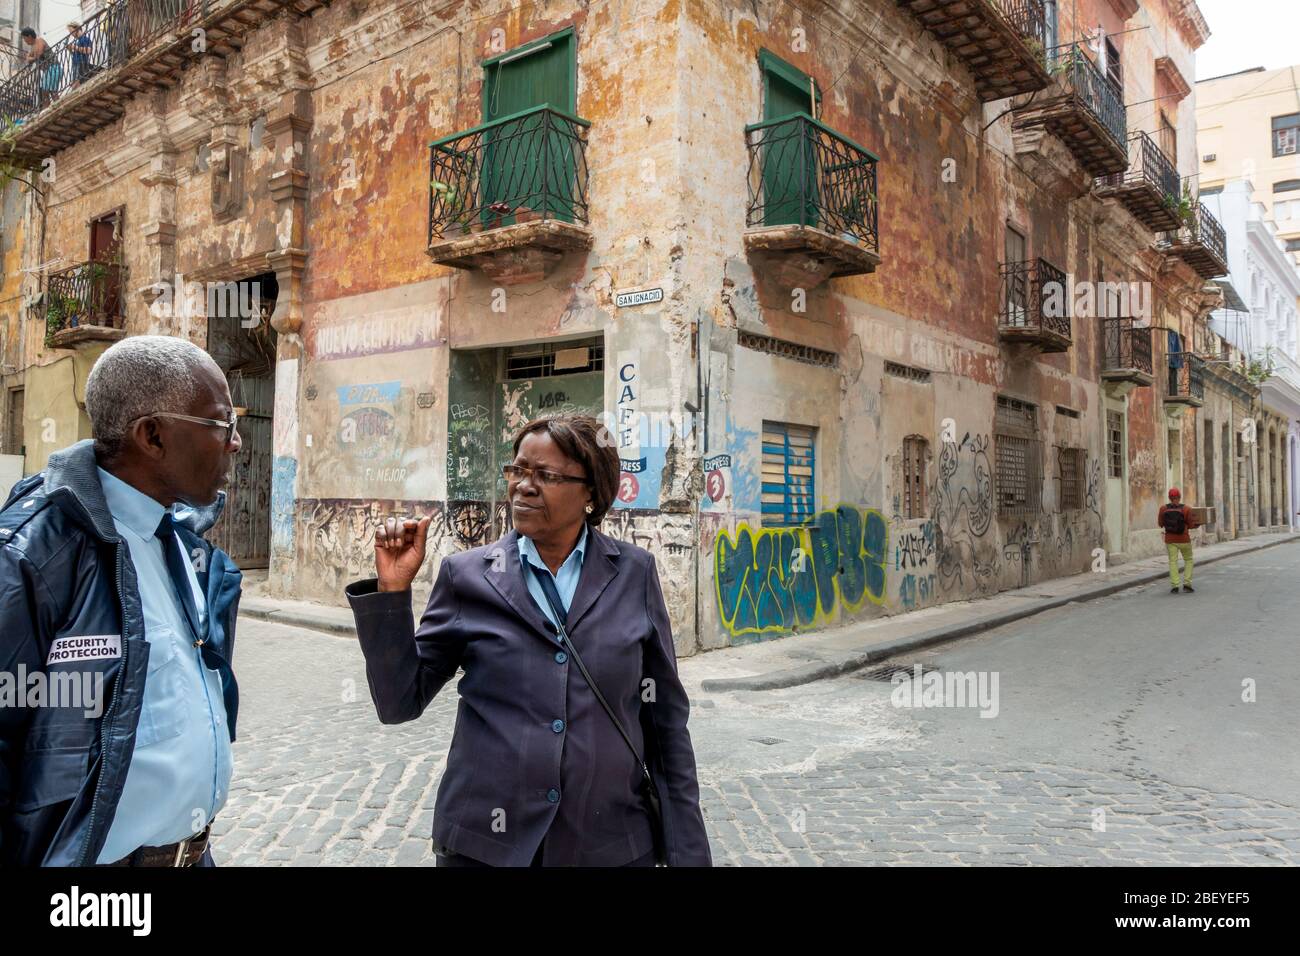 Two CVP people ( 'Cuerpo de Vigilancia y Protección'), or security guards, talking on Calle San Ignacio, Havana old town, Cuba Stock Photo